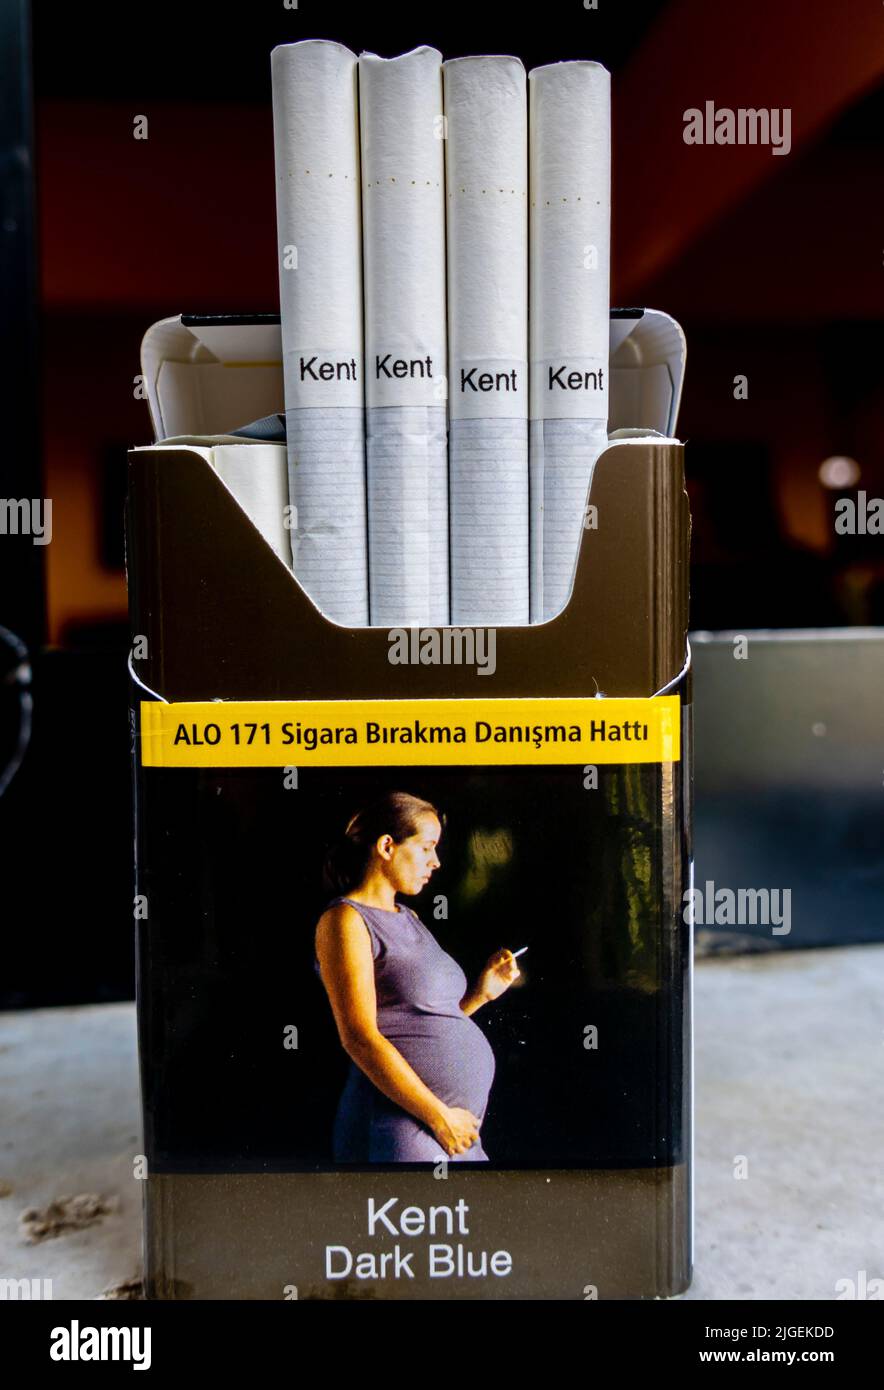 Kent Blue - édition turque - paquet de cigarettes avec une femme enceinte fumant l'avertissement d'image. maternité, santé, fumeur, fumeurs, implications, santé Banque D'Images